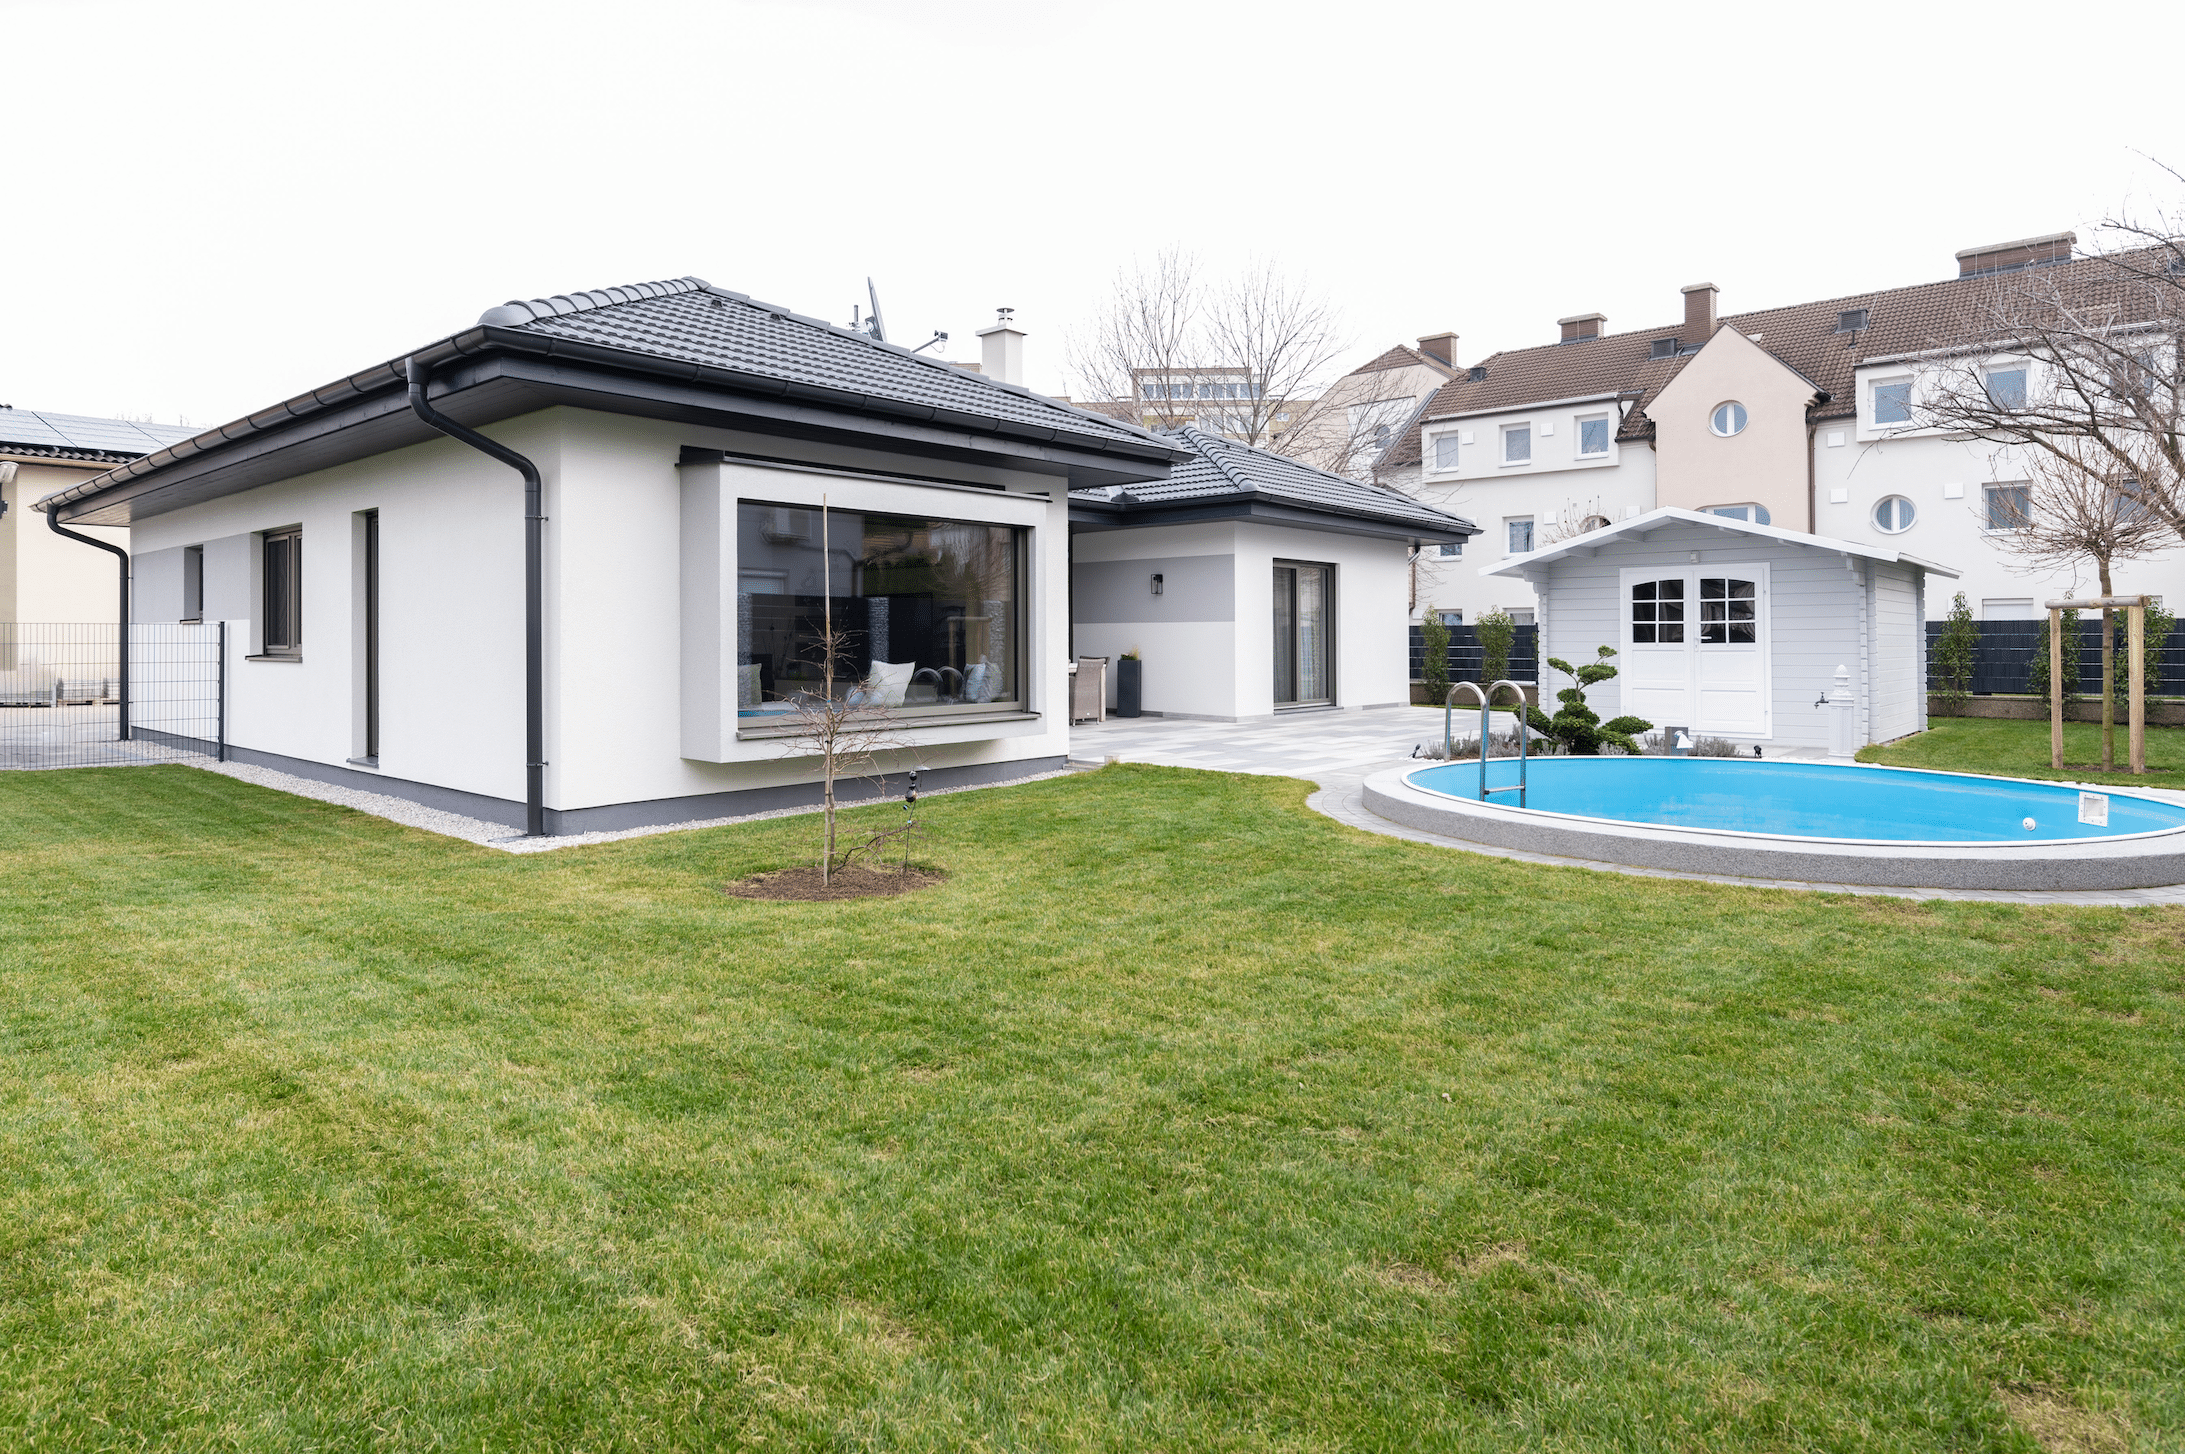 Hartl Haus zeigt einen weißen, modernen Bungalow mit schwarzem Walmdach, großen Fensterflächen, einen Pool und kleinem Gartenhäuschen.